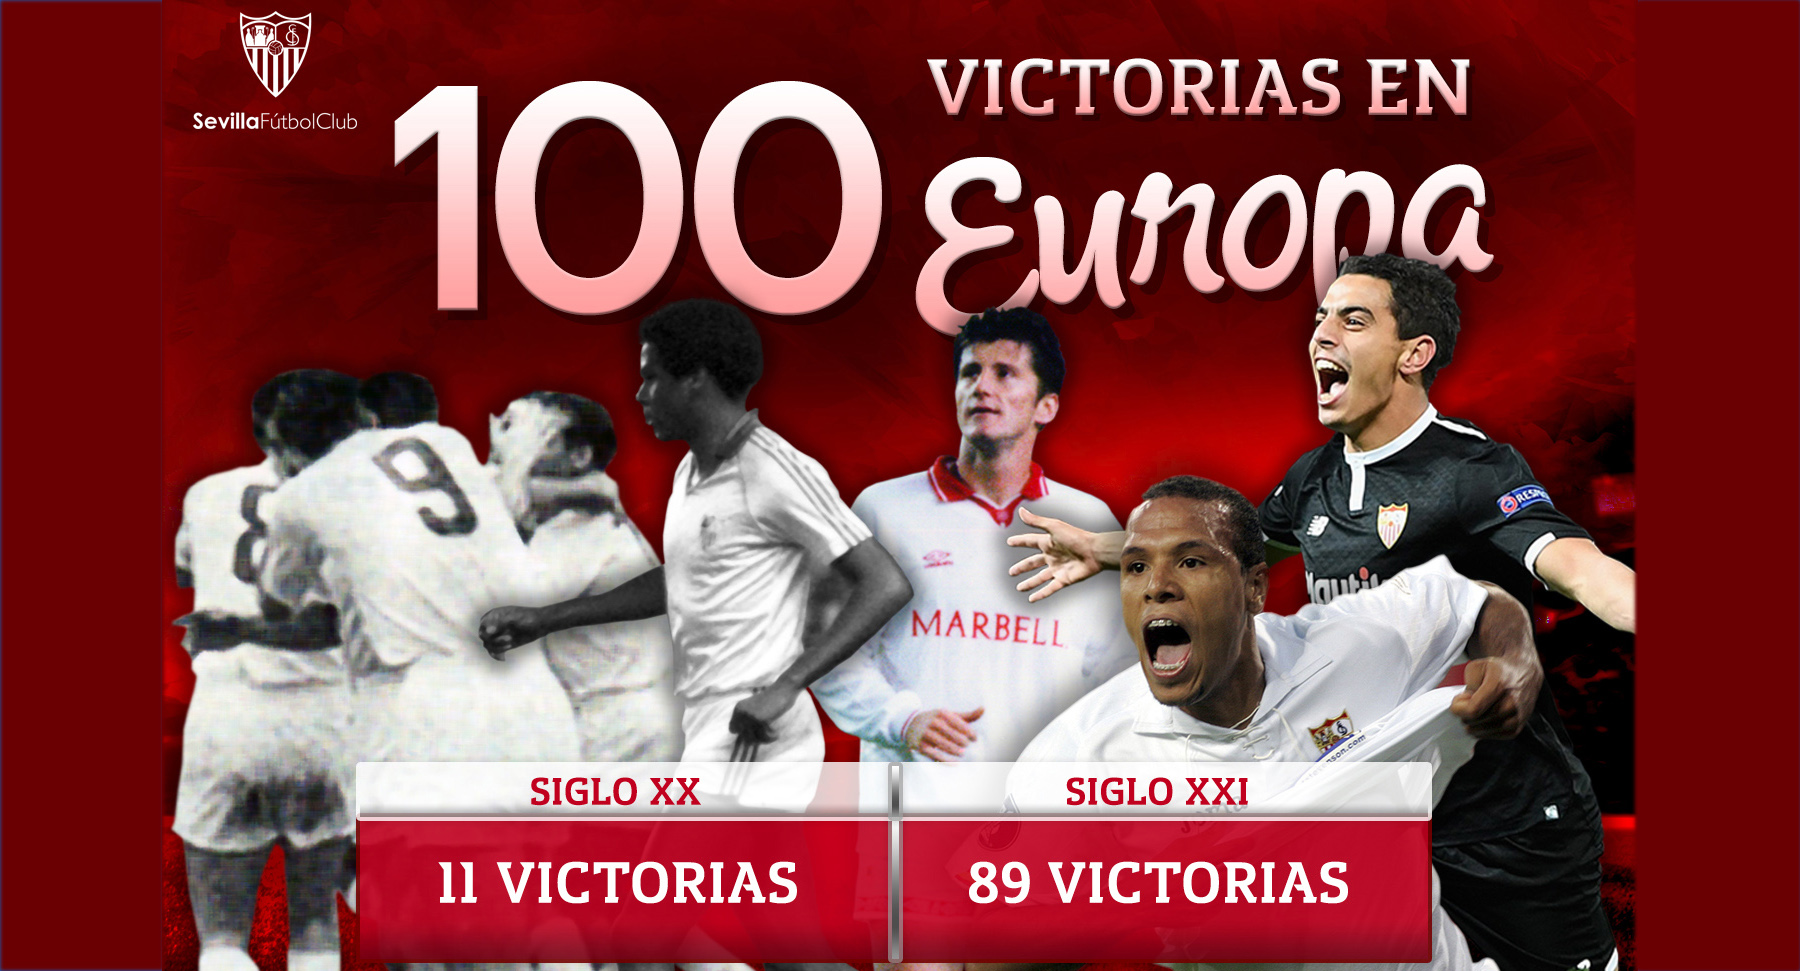 100 wins for Sevilla FC in Europa